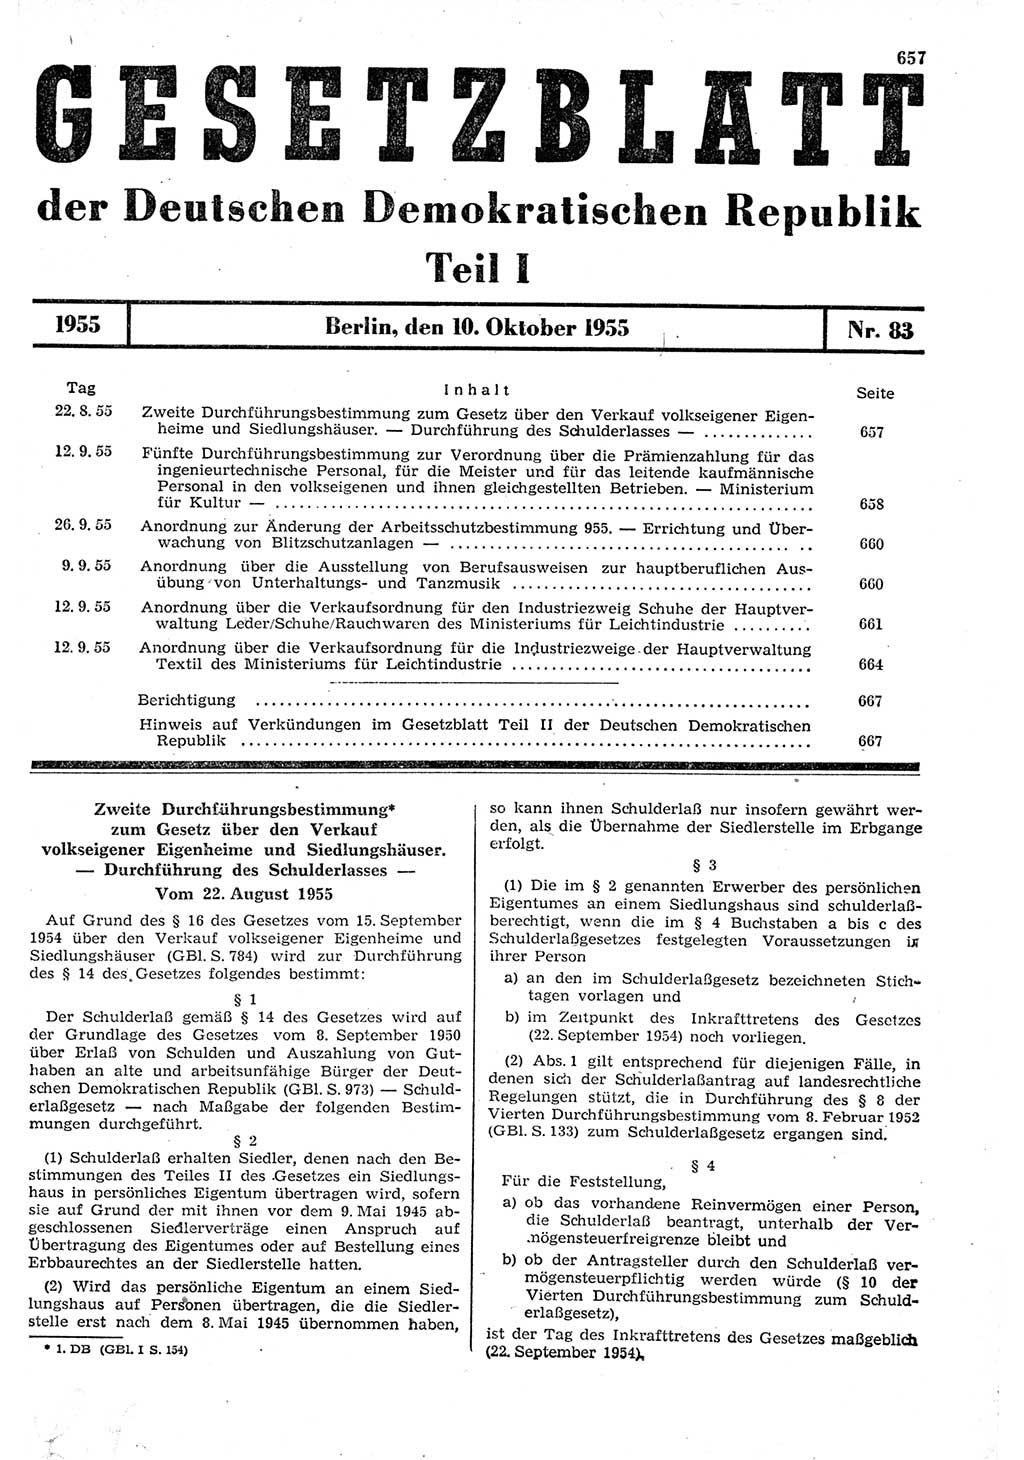 Gesetzblatt (GBl.) der Deutschen Demokratischen Republik (DDR) Teil Ⅰ 1955, Seite 657 (GBl. DDR Ⅰ 1955, S. 657)